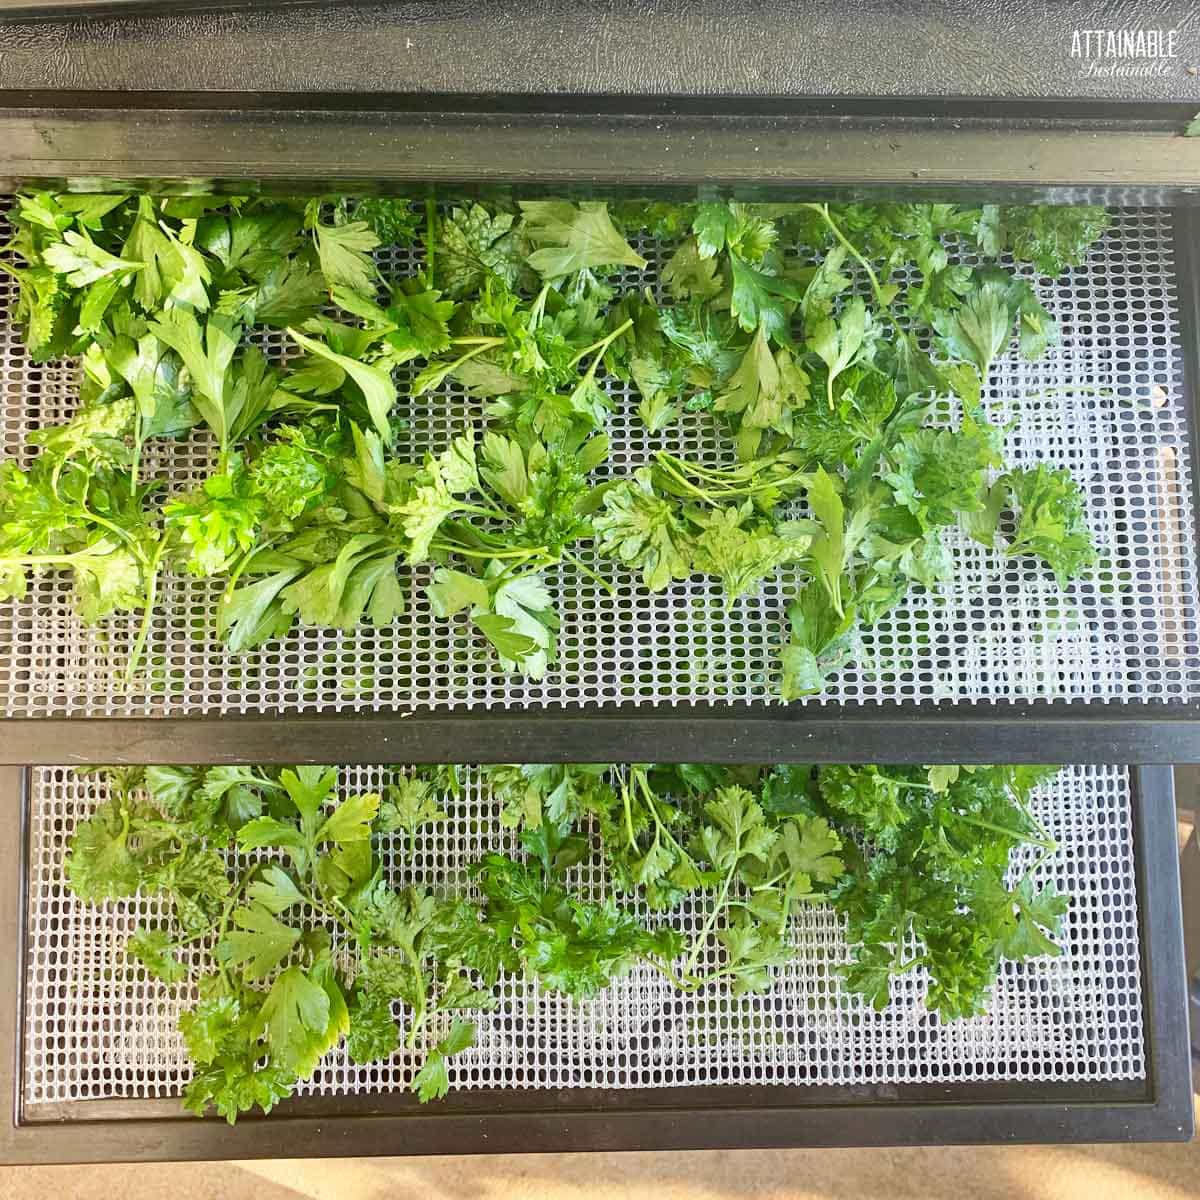 fresh parsley on drying trays in a dehydrator.